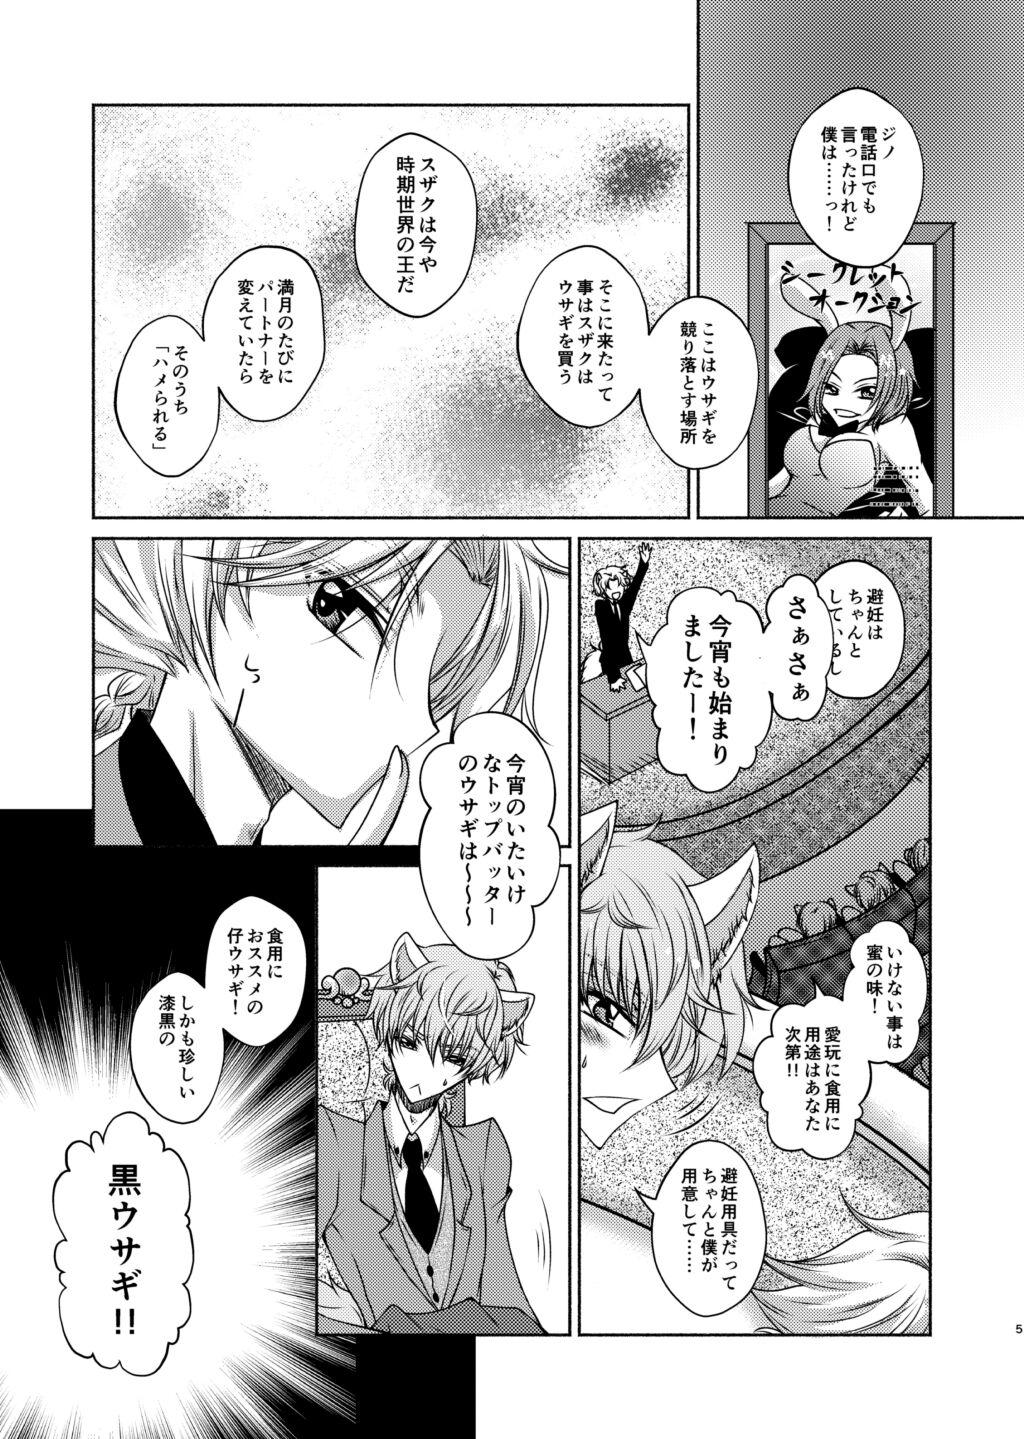 Banging Ookami Suzaku X Kuro Usagi Lelouch Tsume - Code geass Chacal - Page 3